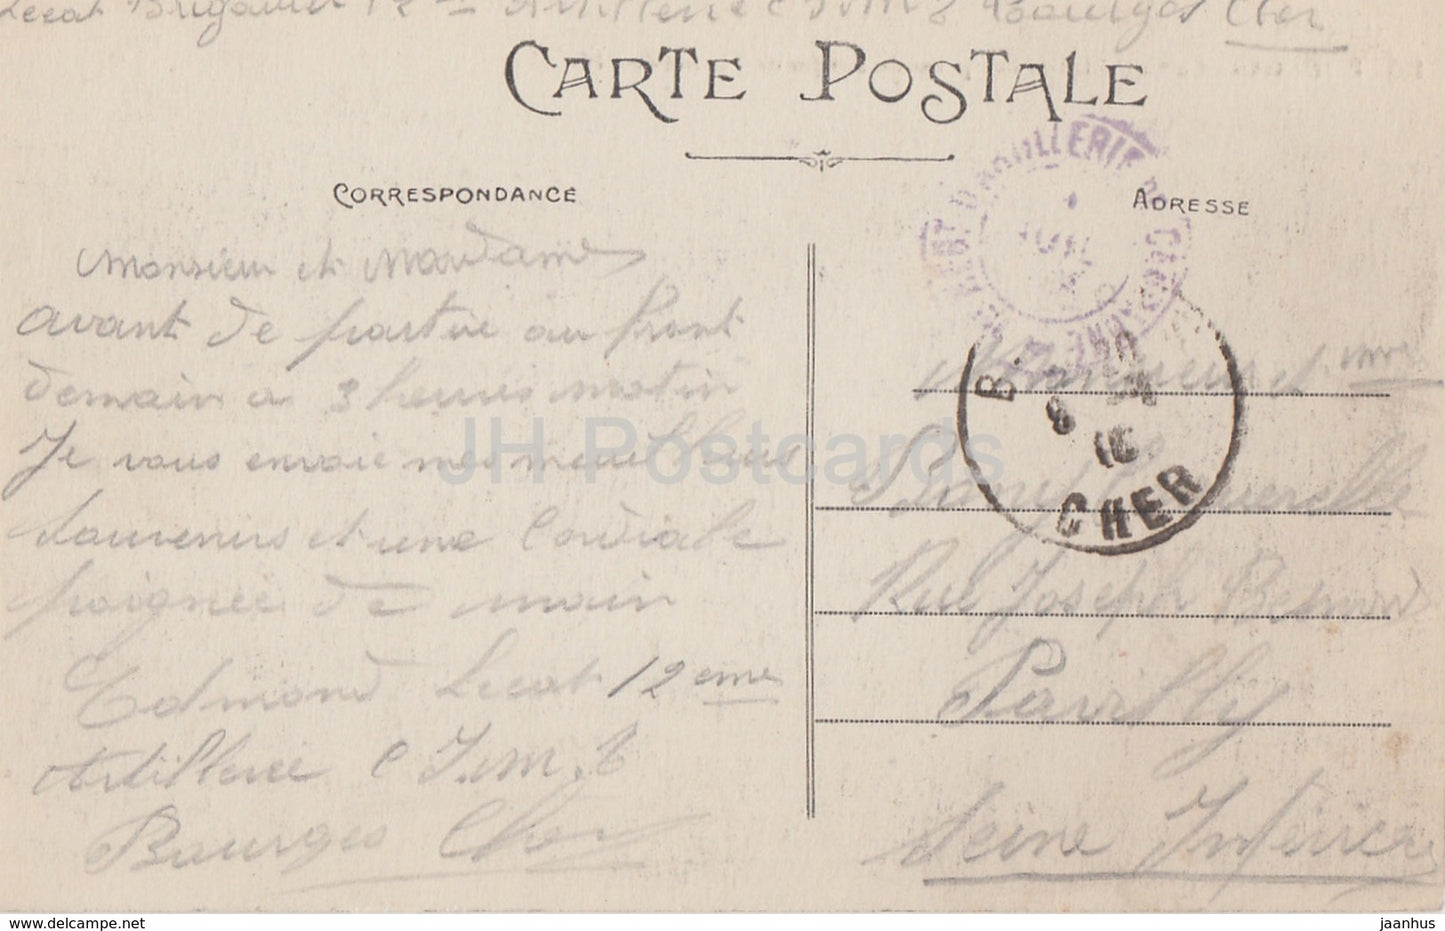 Bourges - La Cathedrale - Vue prise du Jardind l'Hotel de Ville - cathedral - 205 - old postcard - France - used